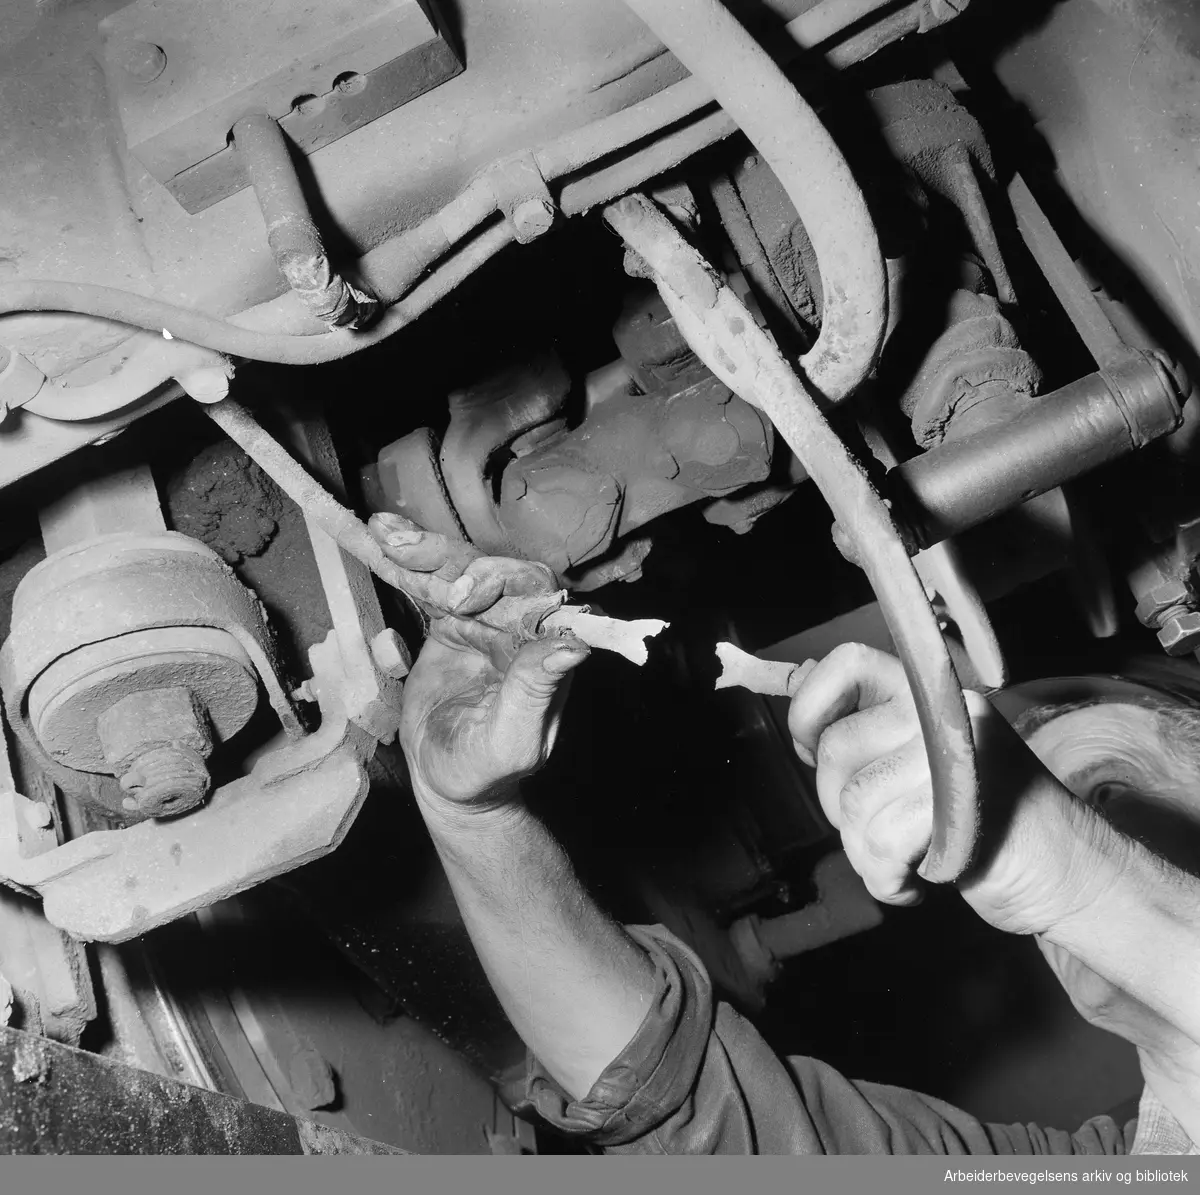 Oslo Sporveiers vognmateriell kontrolleres etter strenge rutiner i trikkehallen på Grefsen. "Ved kontrollen ble det oppdaget at kabelskoene på en jordledning hadde røket". August 1958